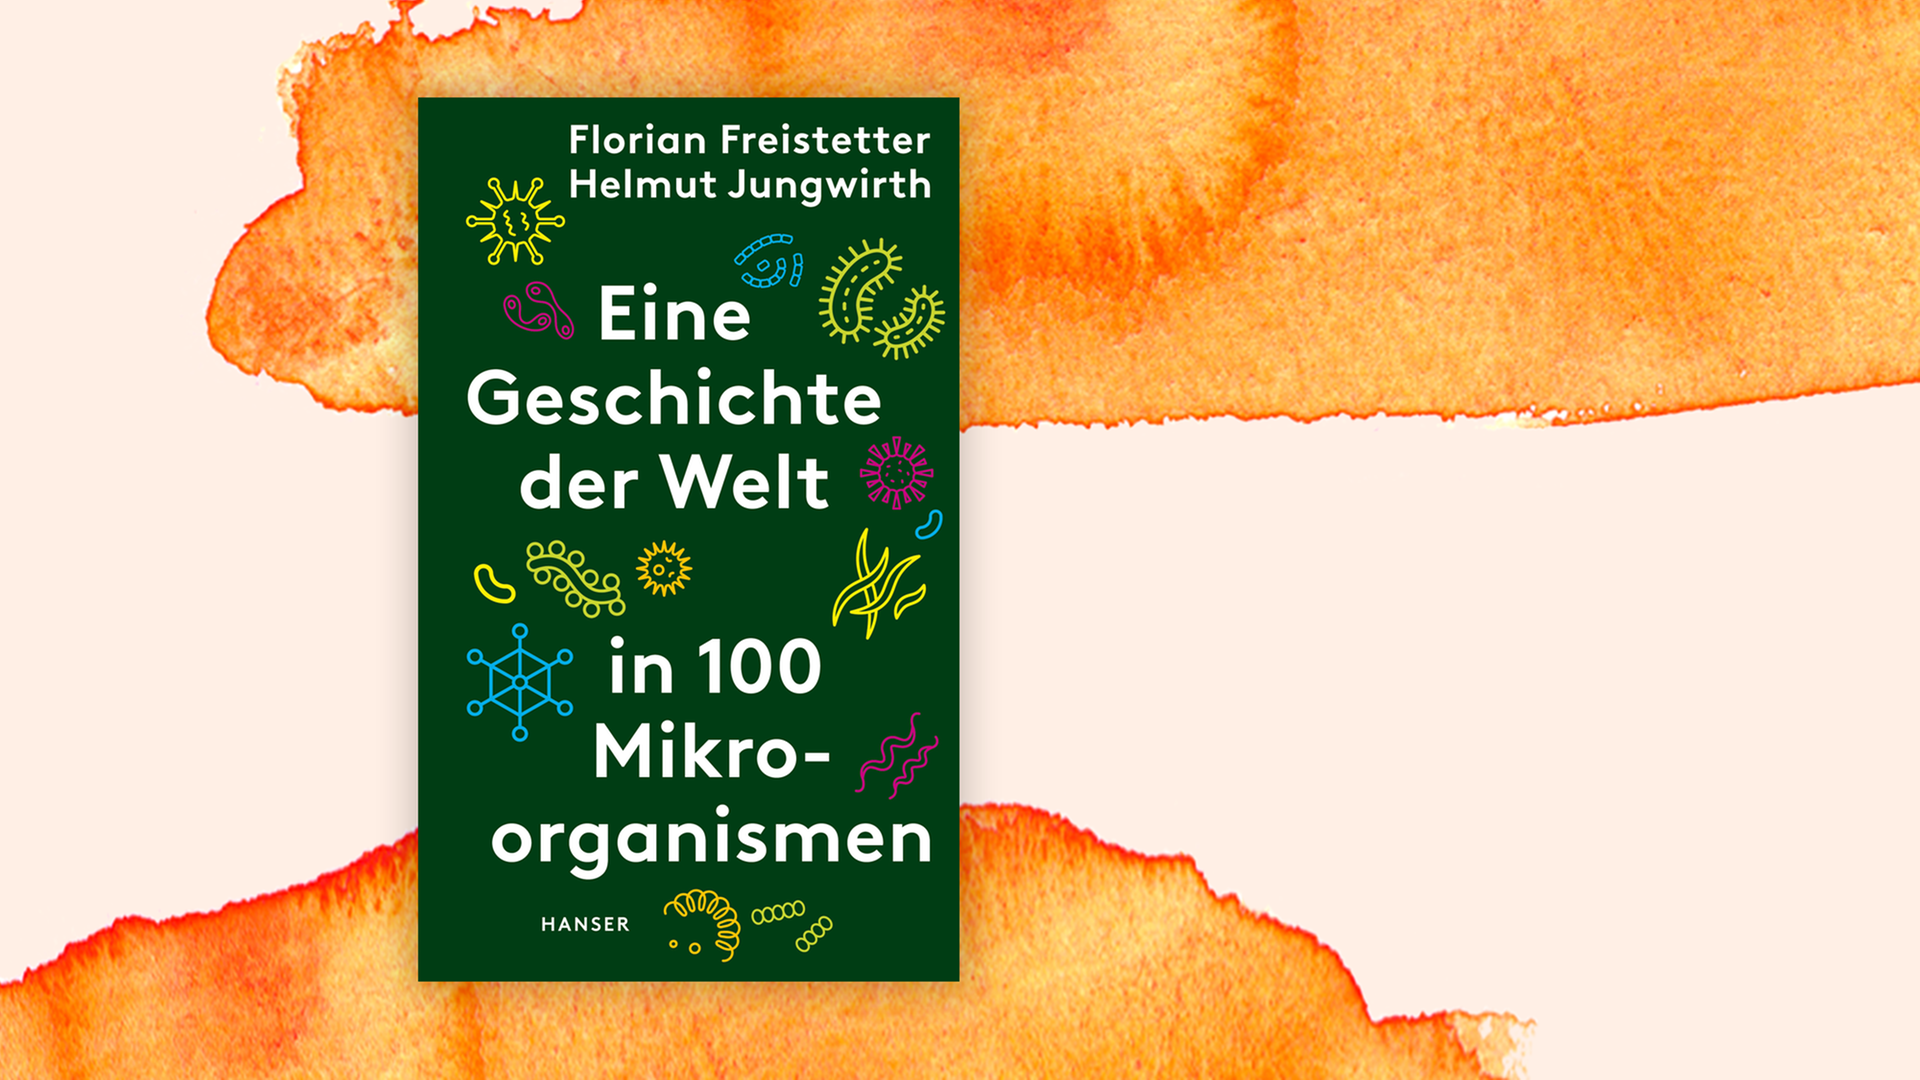 Zu sehen ist das Cover des Buches "Eine Geschichte der Welt in 100 Mikroorganismen".